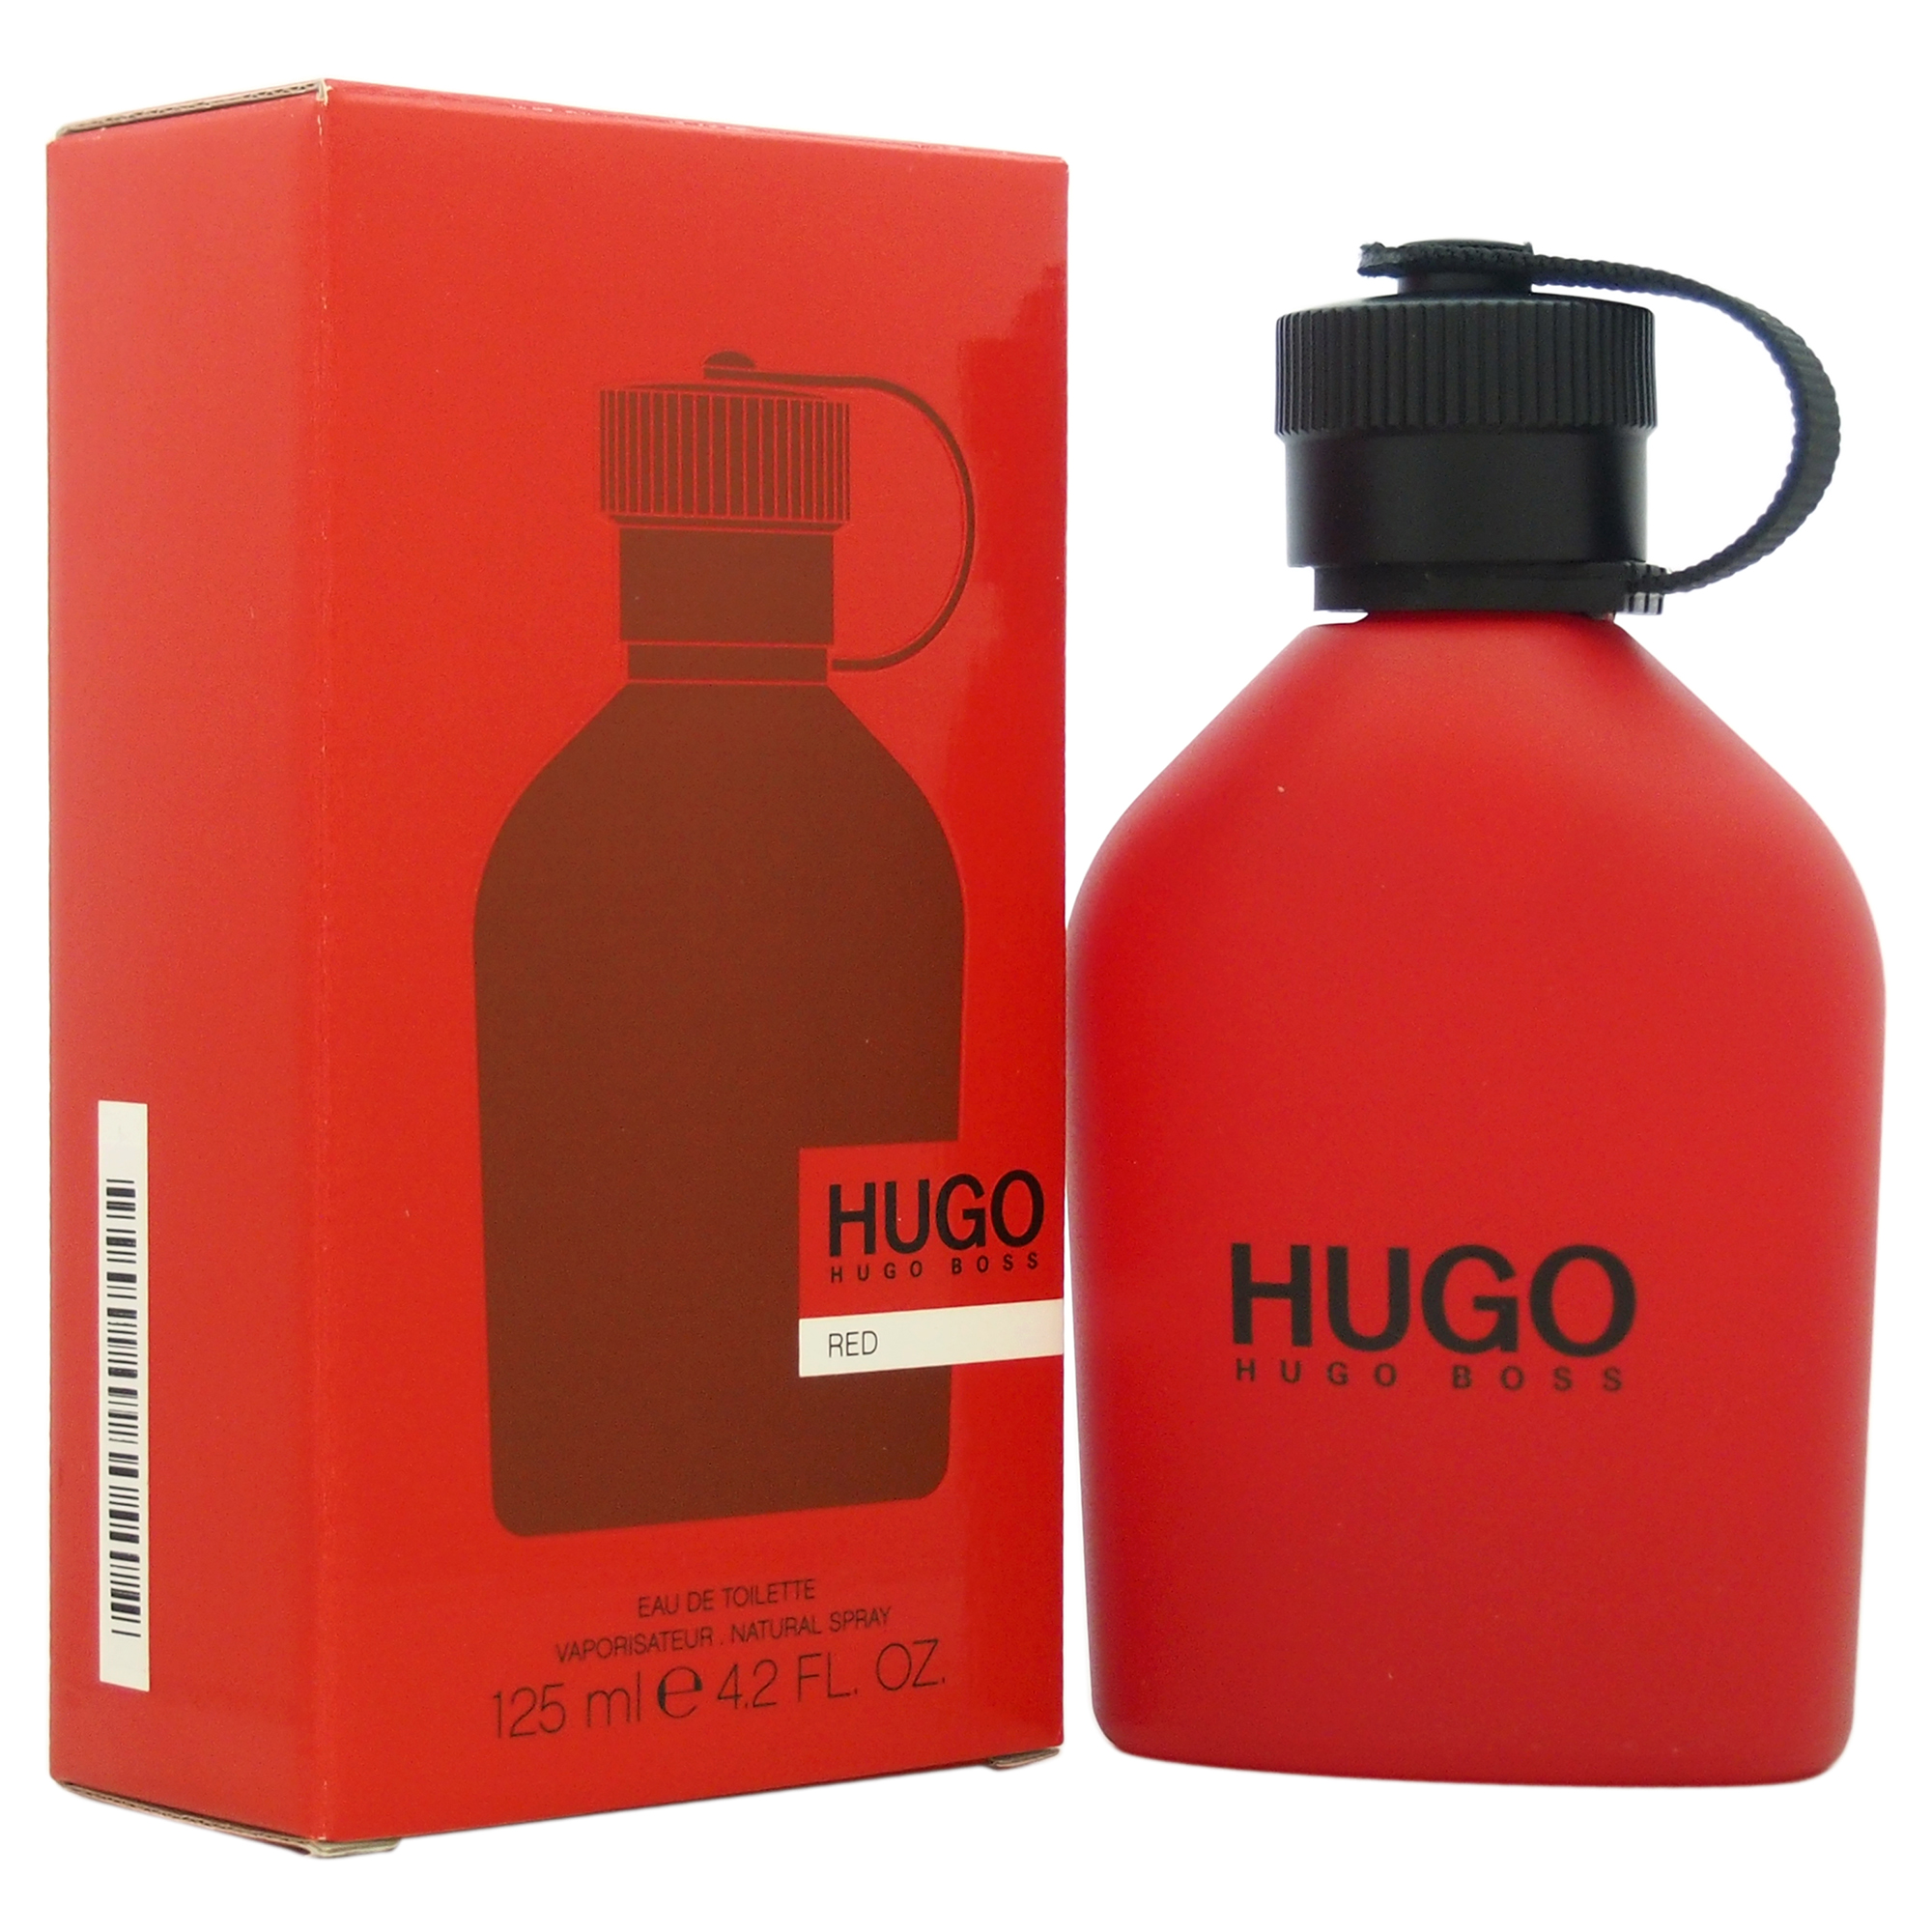 Hugo Boss Hugo Red. Хуго босс рыжий. Hugo Boss кроссовки мужские красные. Хьюго босс ред